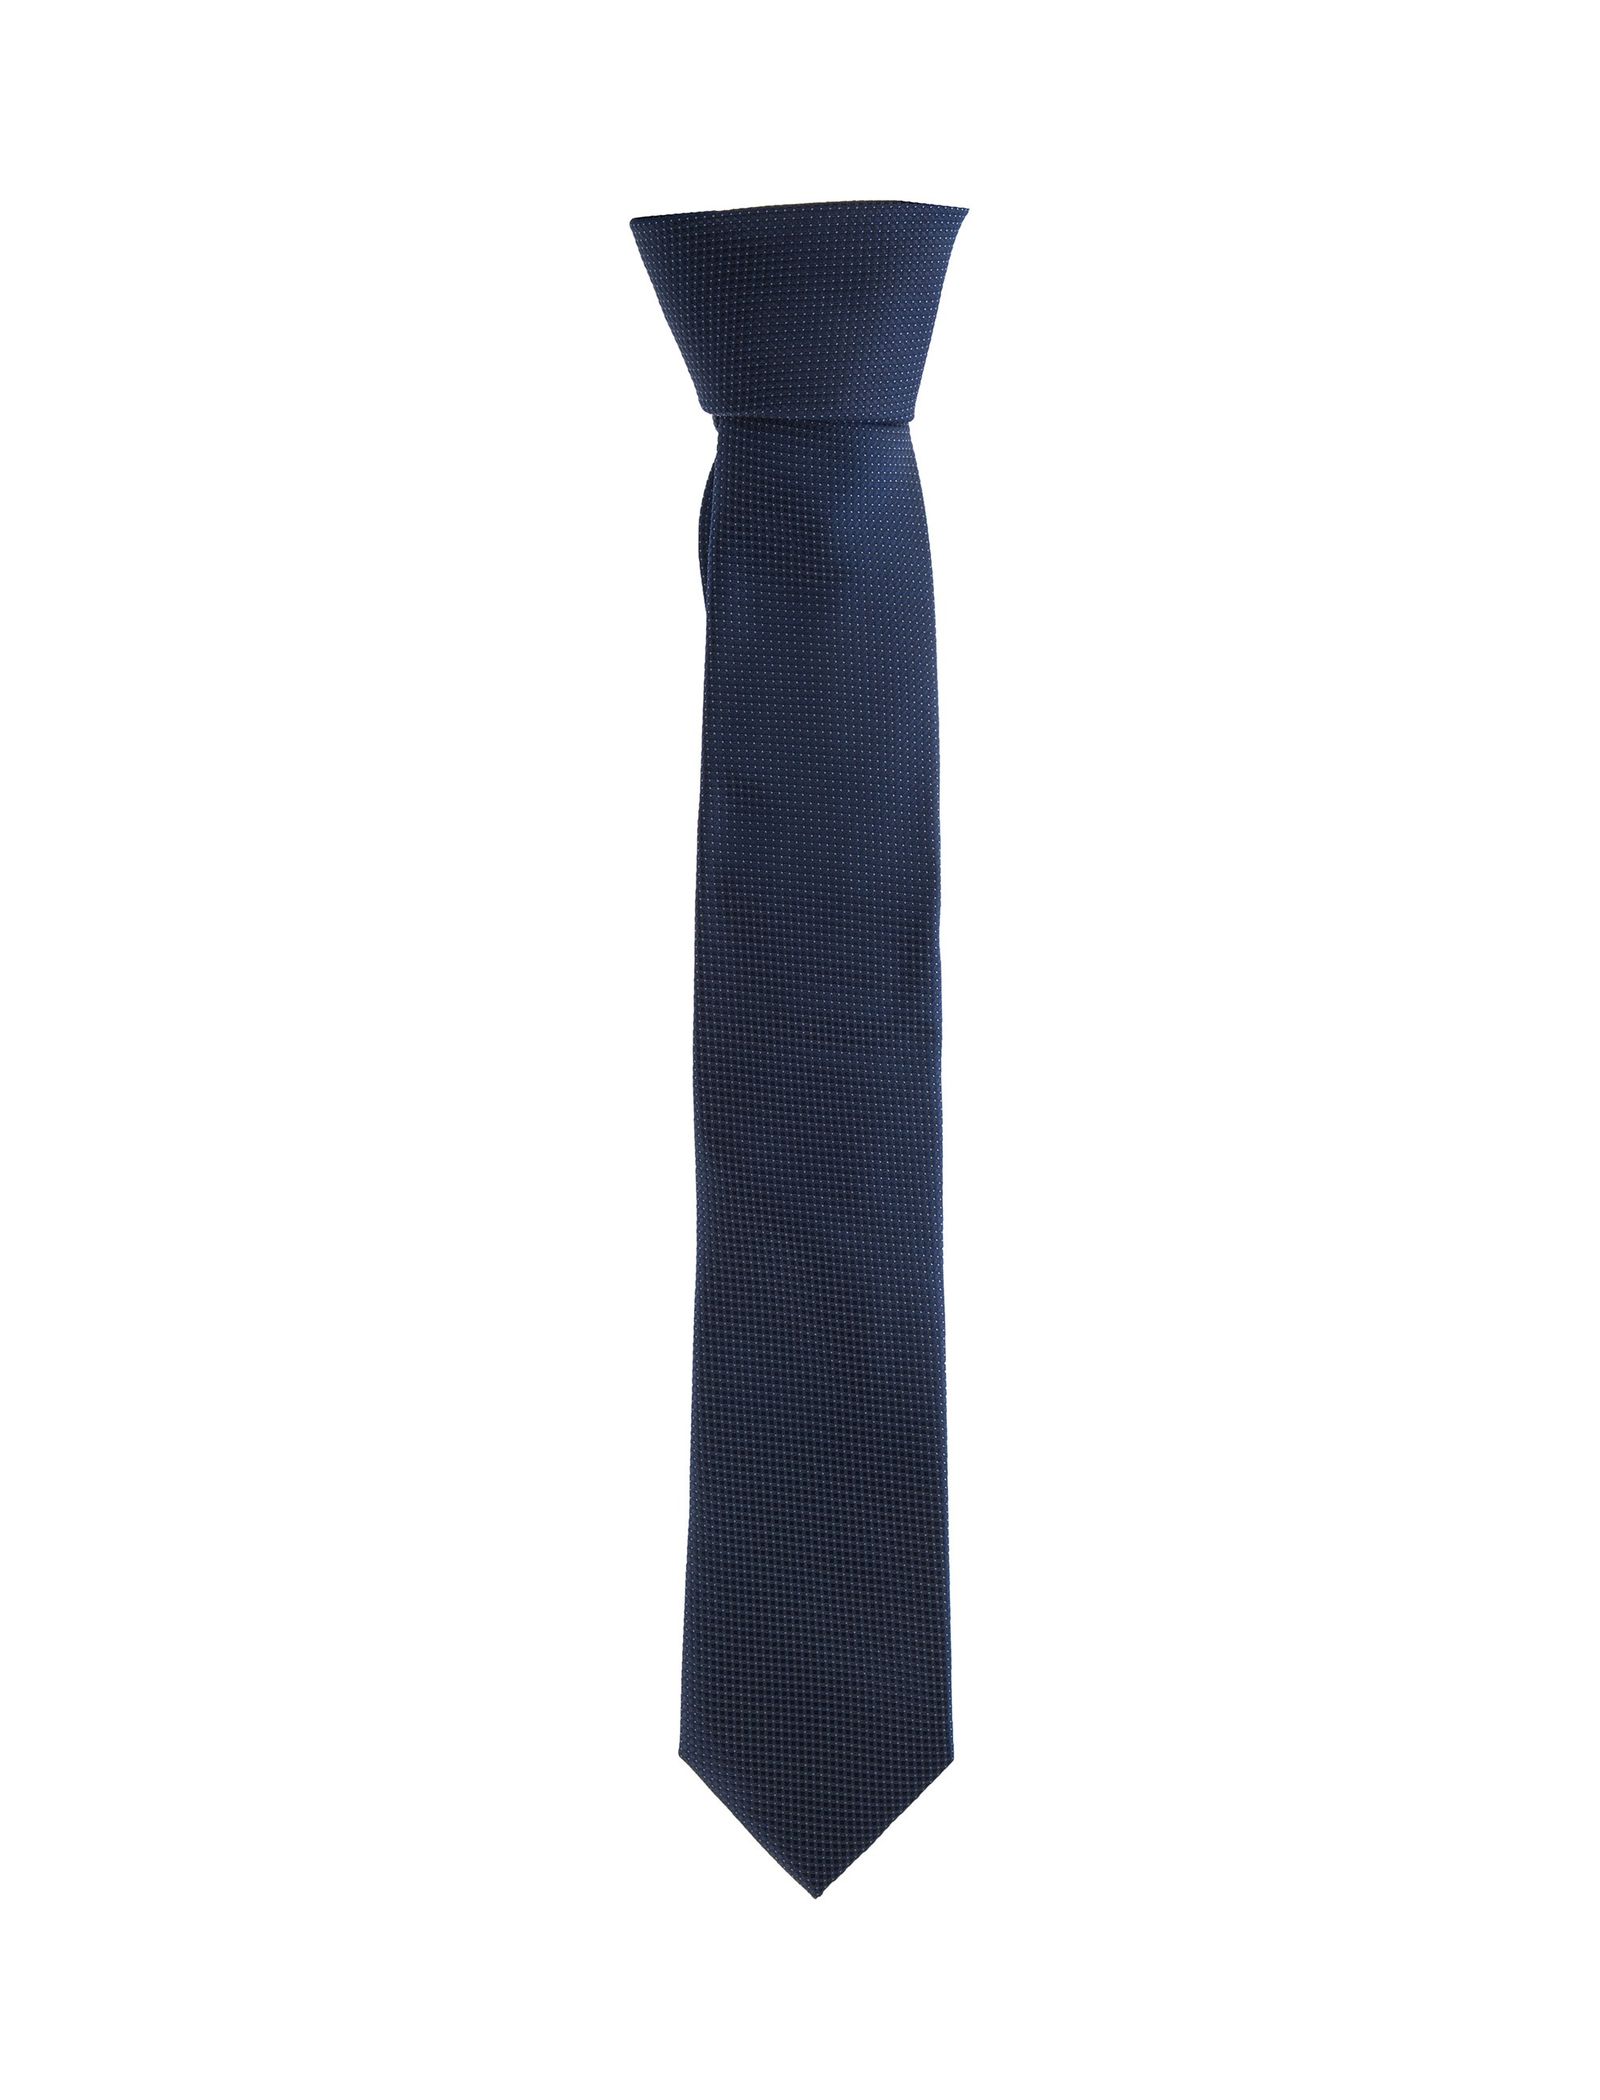 کراوات طرح دار مردانه - یوپیم - سرمه اي - 1